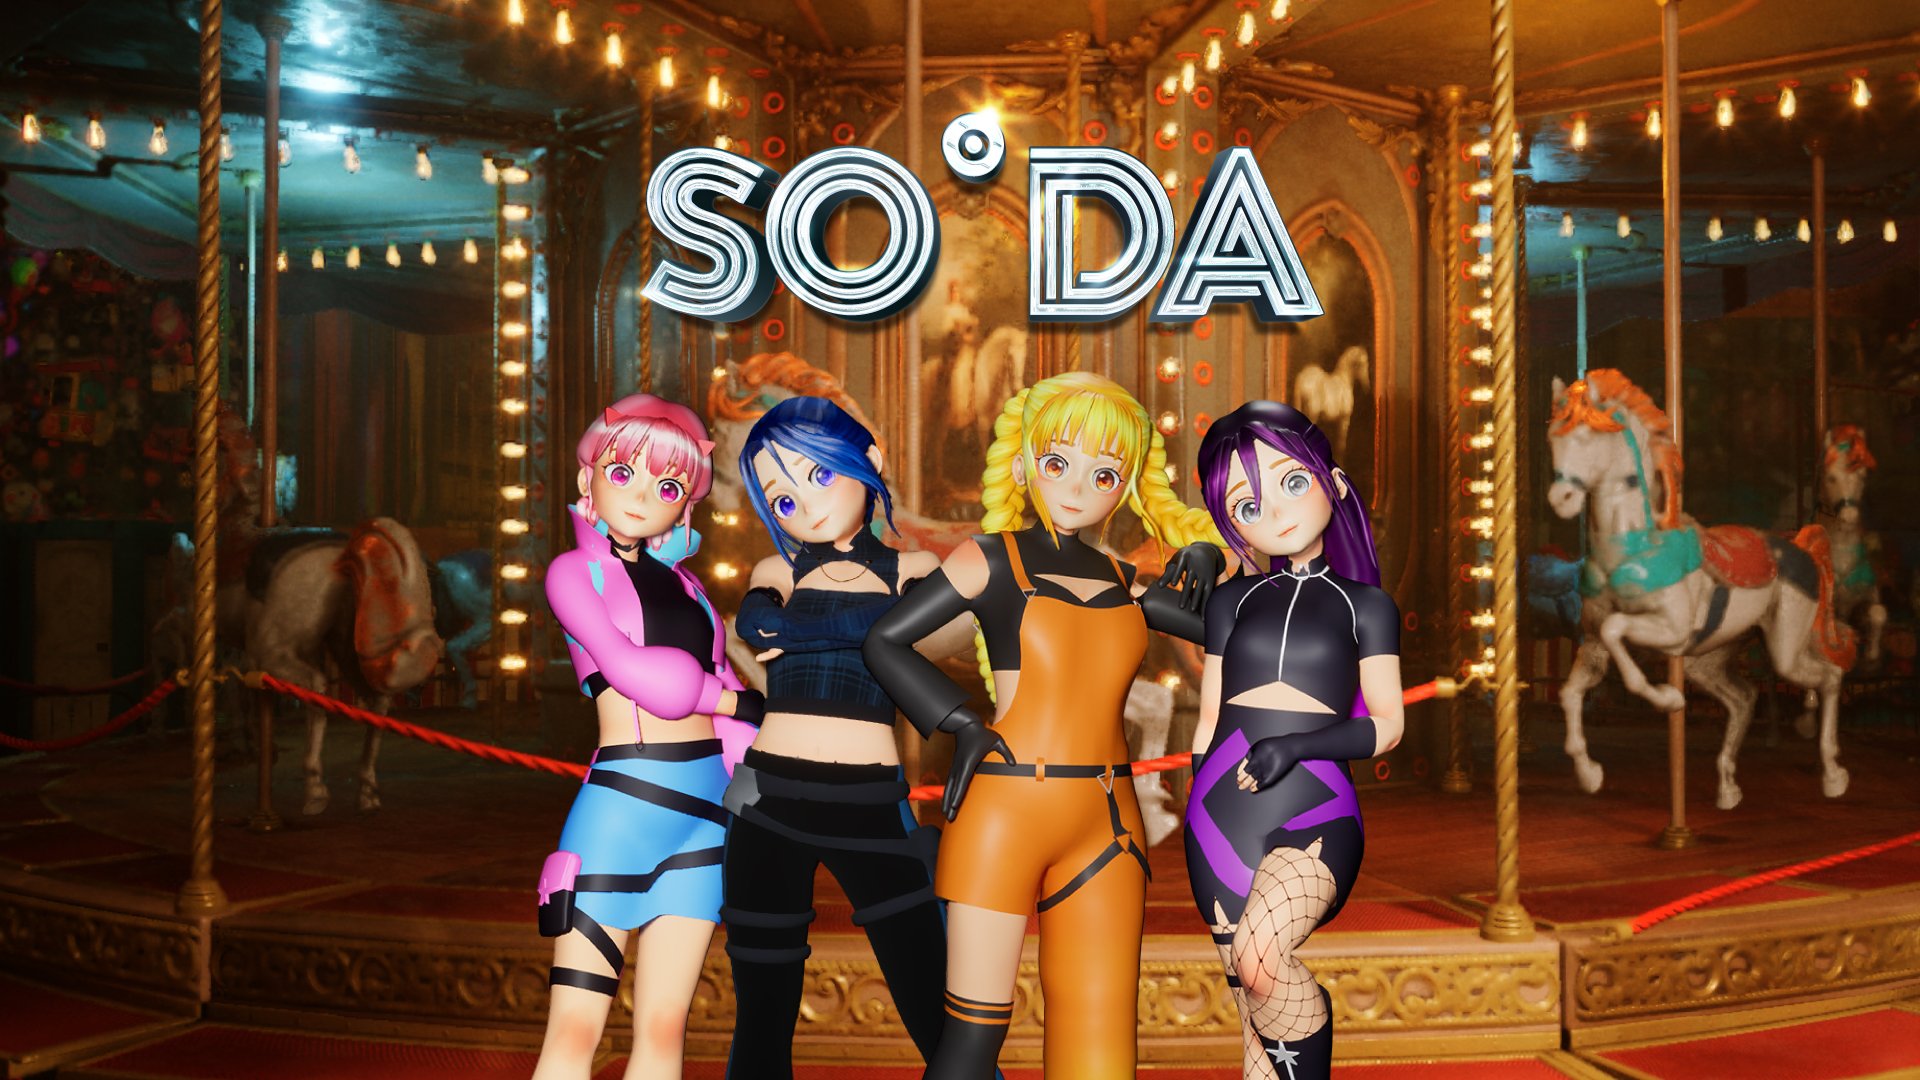 Cover image for Soda Pop MV by SODA